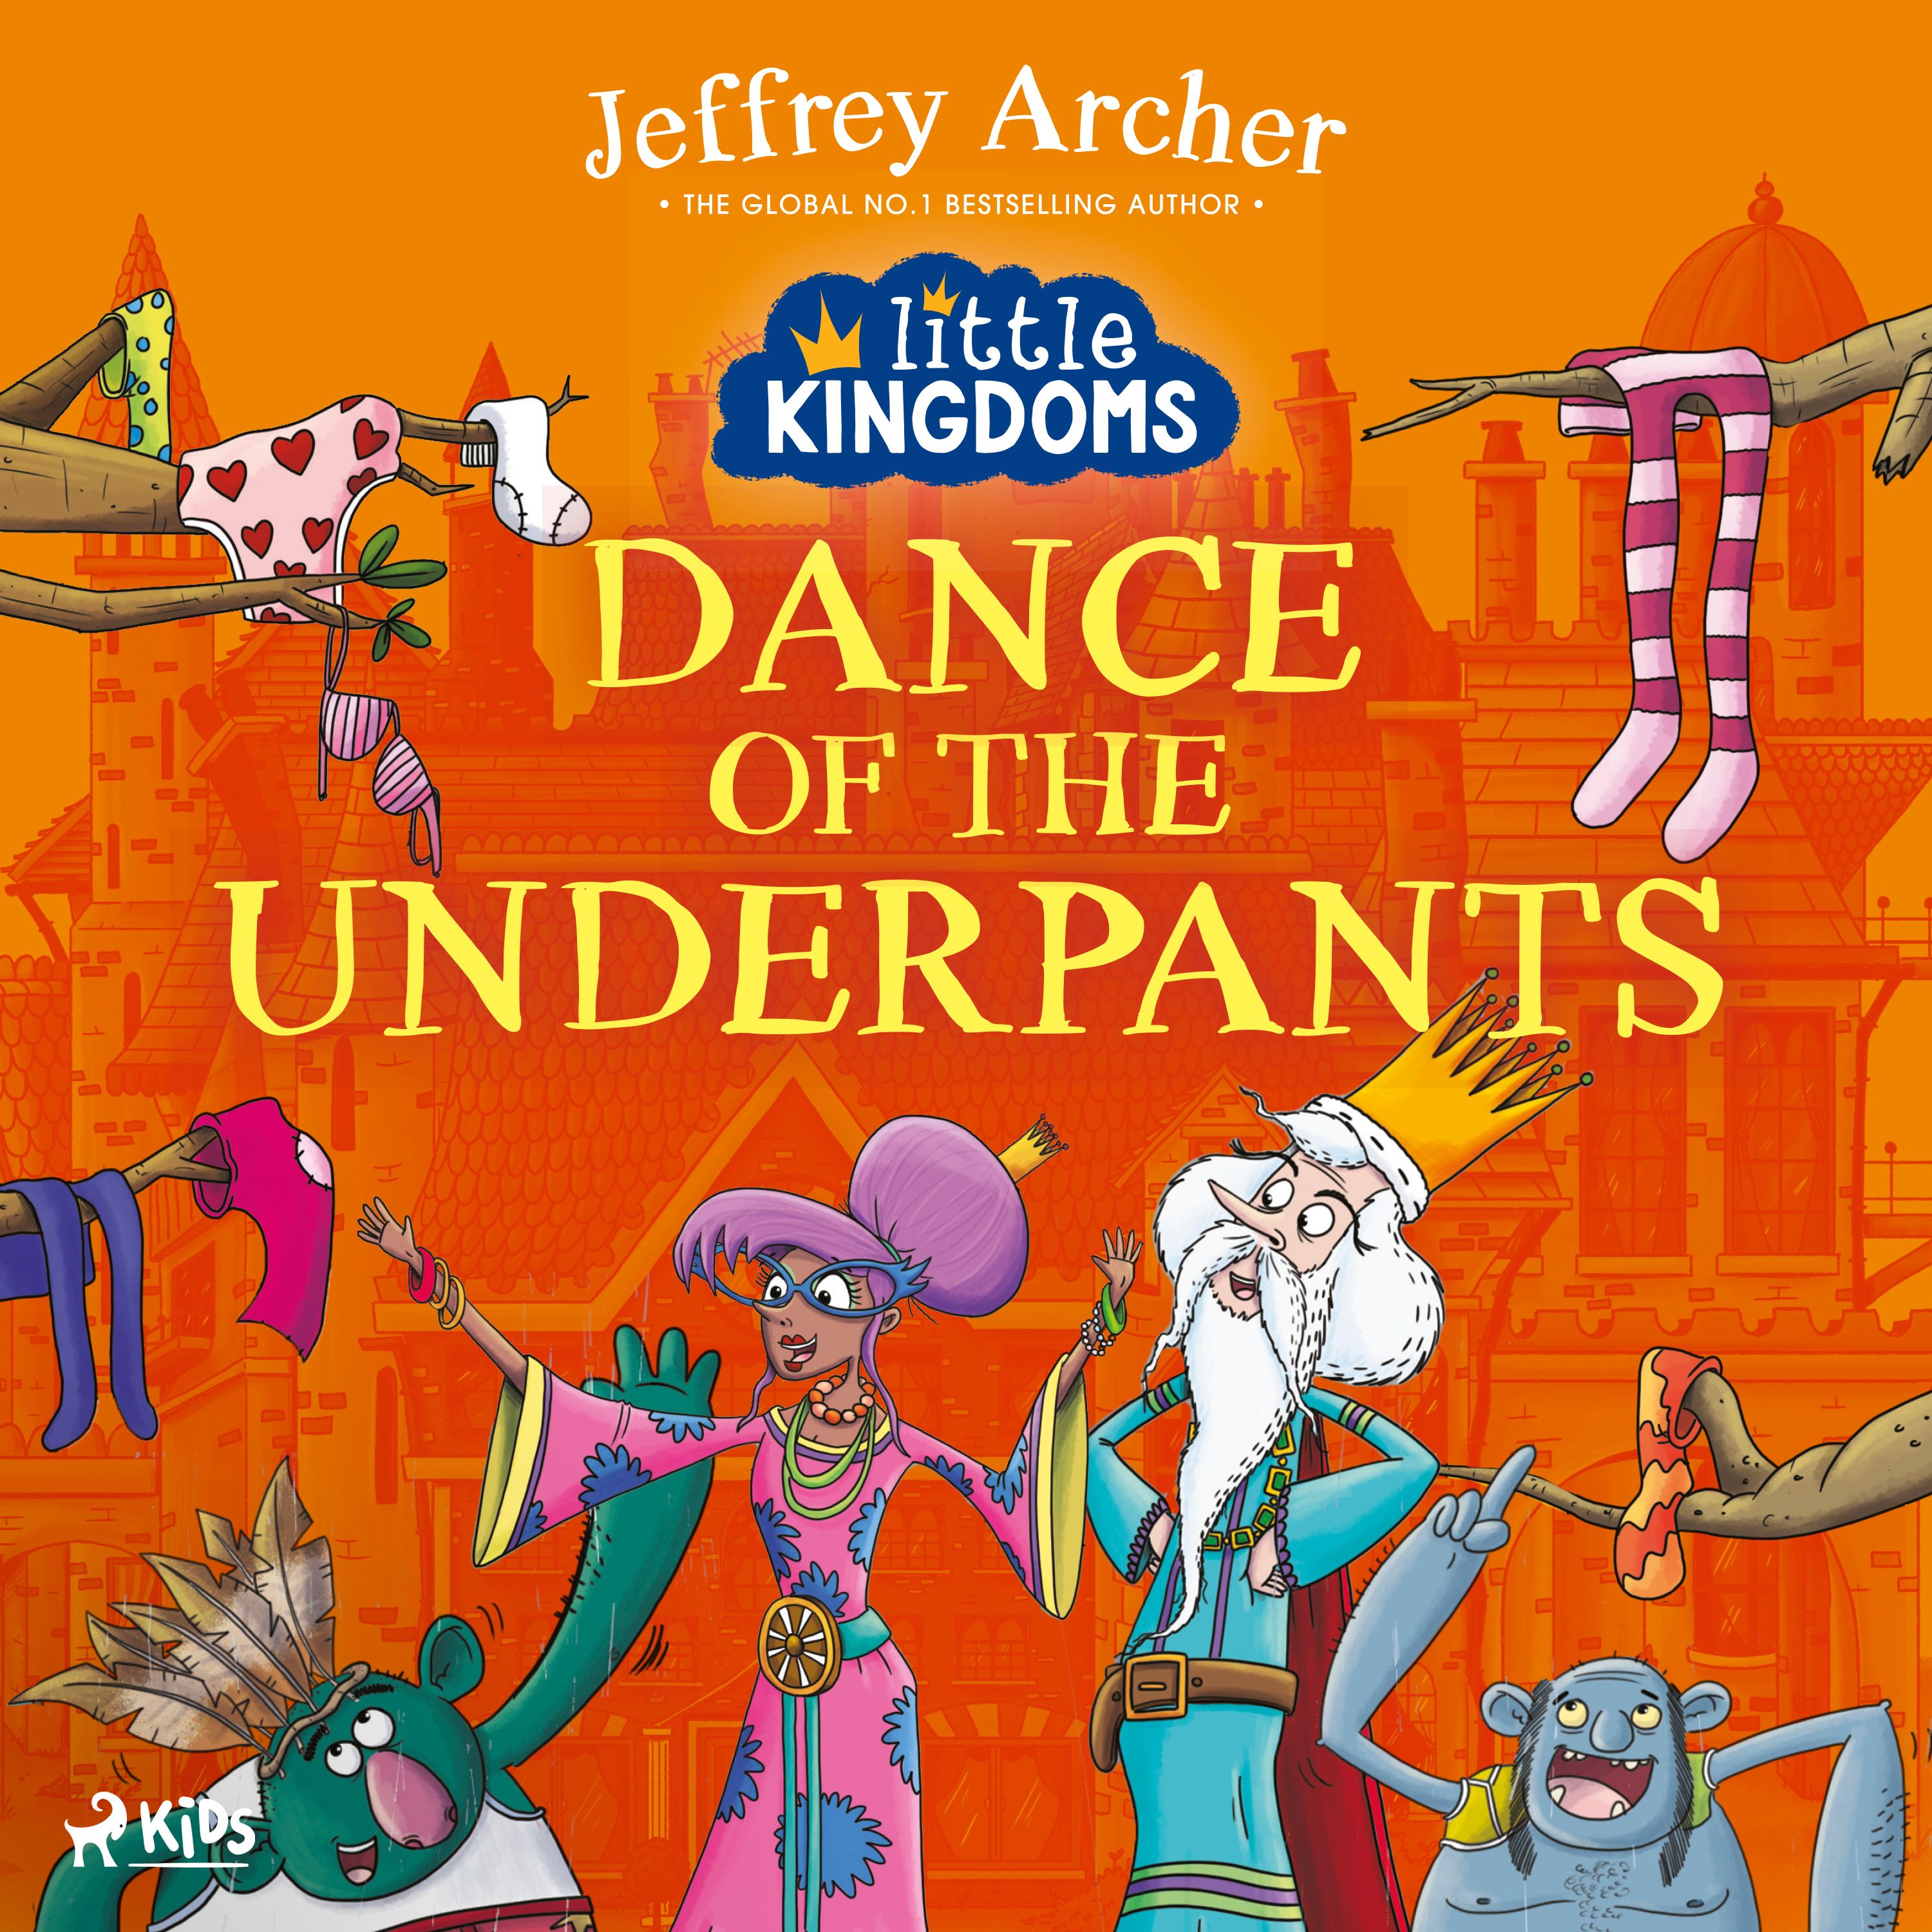 Little Kingdoms: Dance of the Underpants, audiobook by Jeffrey Archer